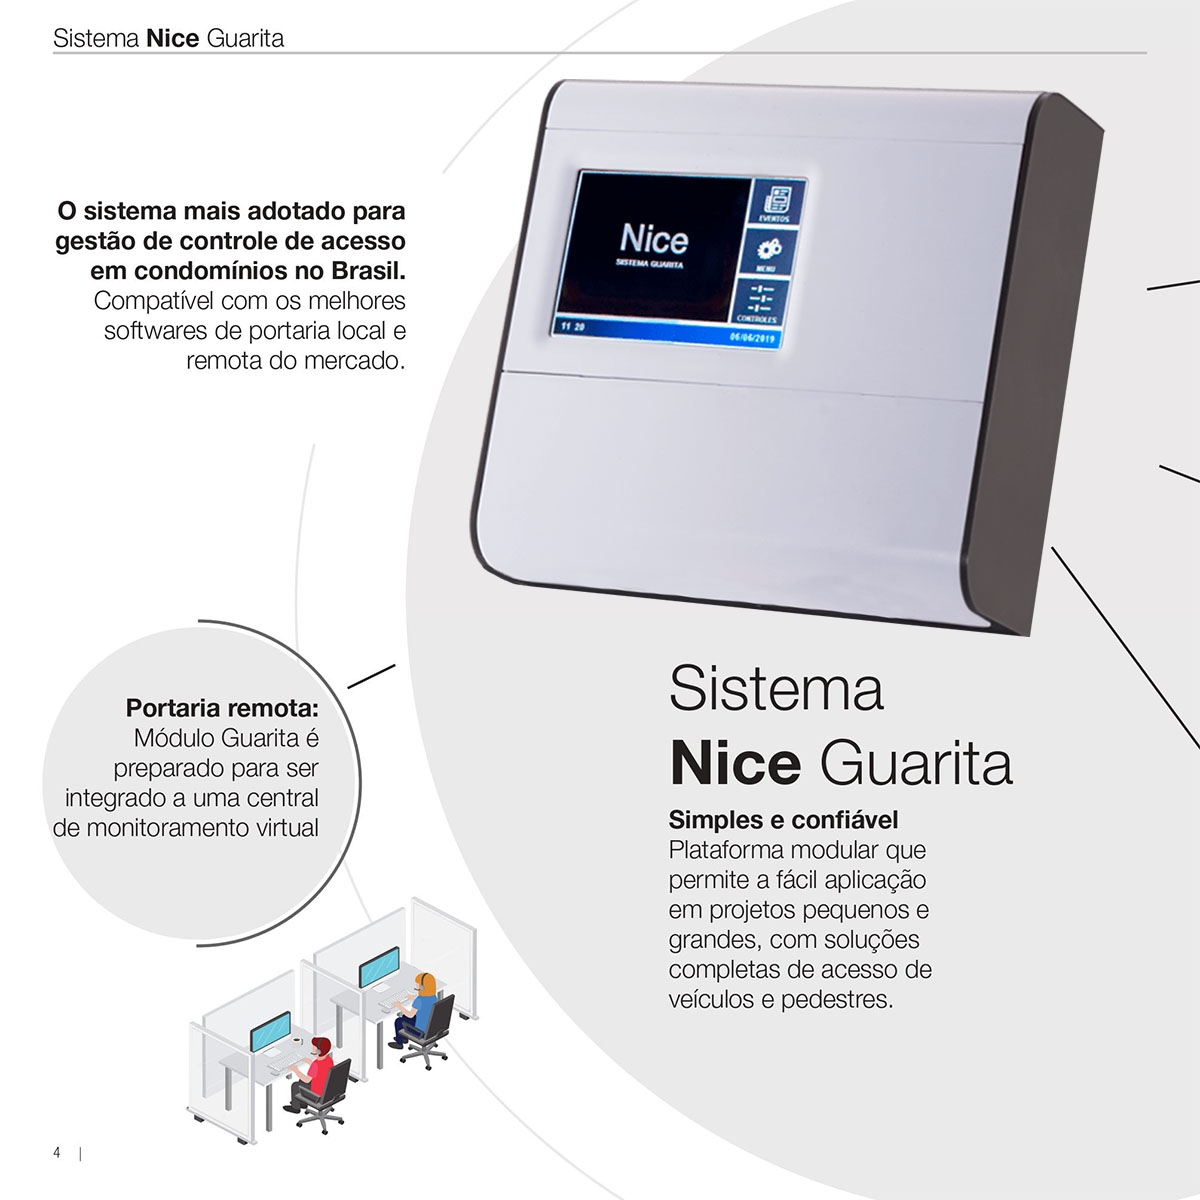 Módulo Guarita Ip MG3000 Controle de Acesso Nice Linear HCS